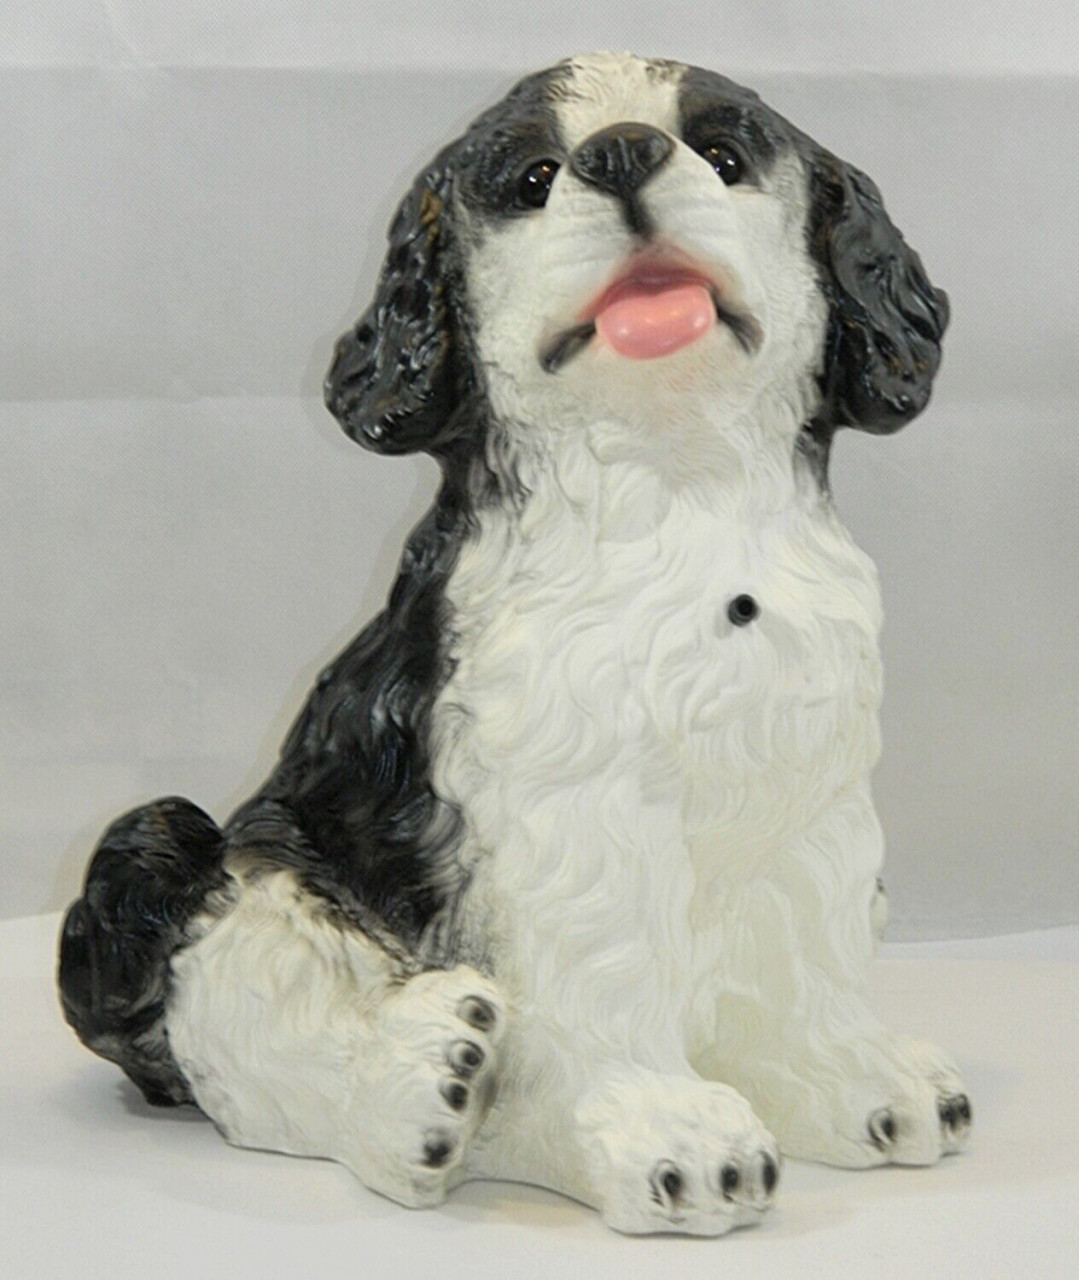 Deko Figur Hund Landseer groß H 37 cm Tierfigur mit Scherzbewegungsmelder Wau-wau von OM